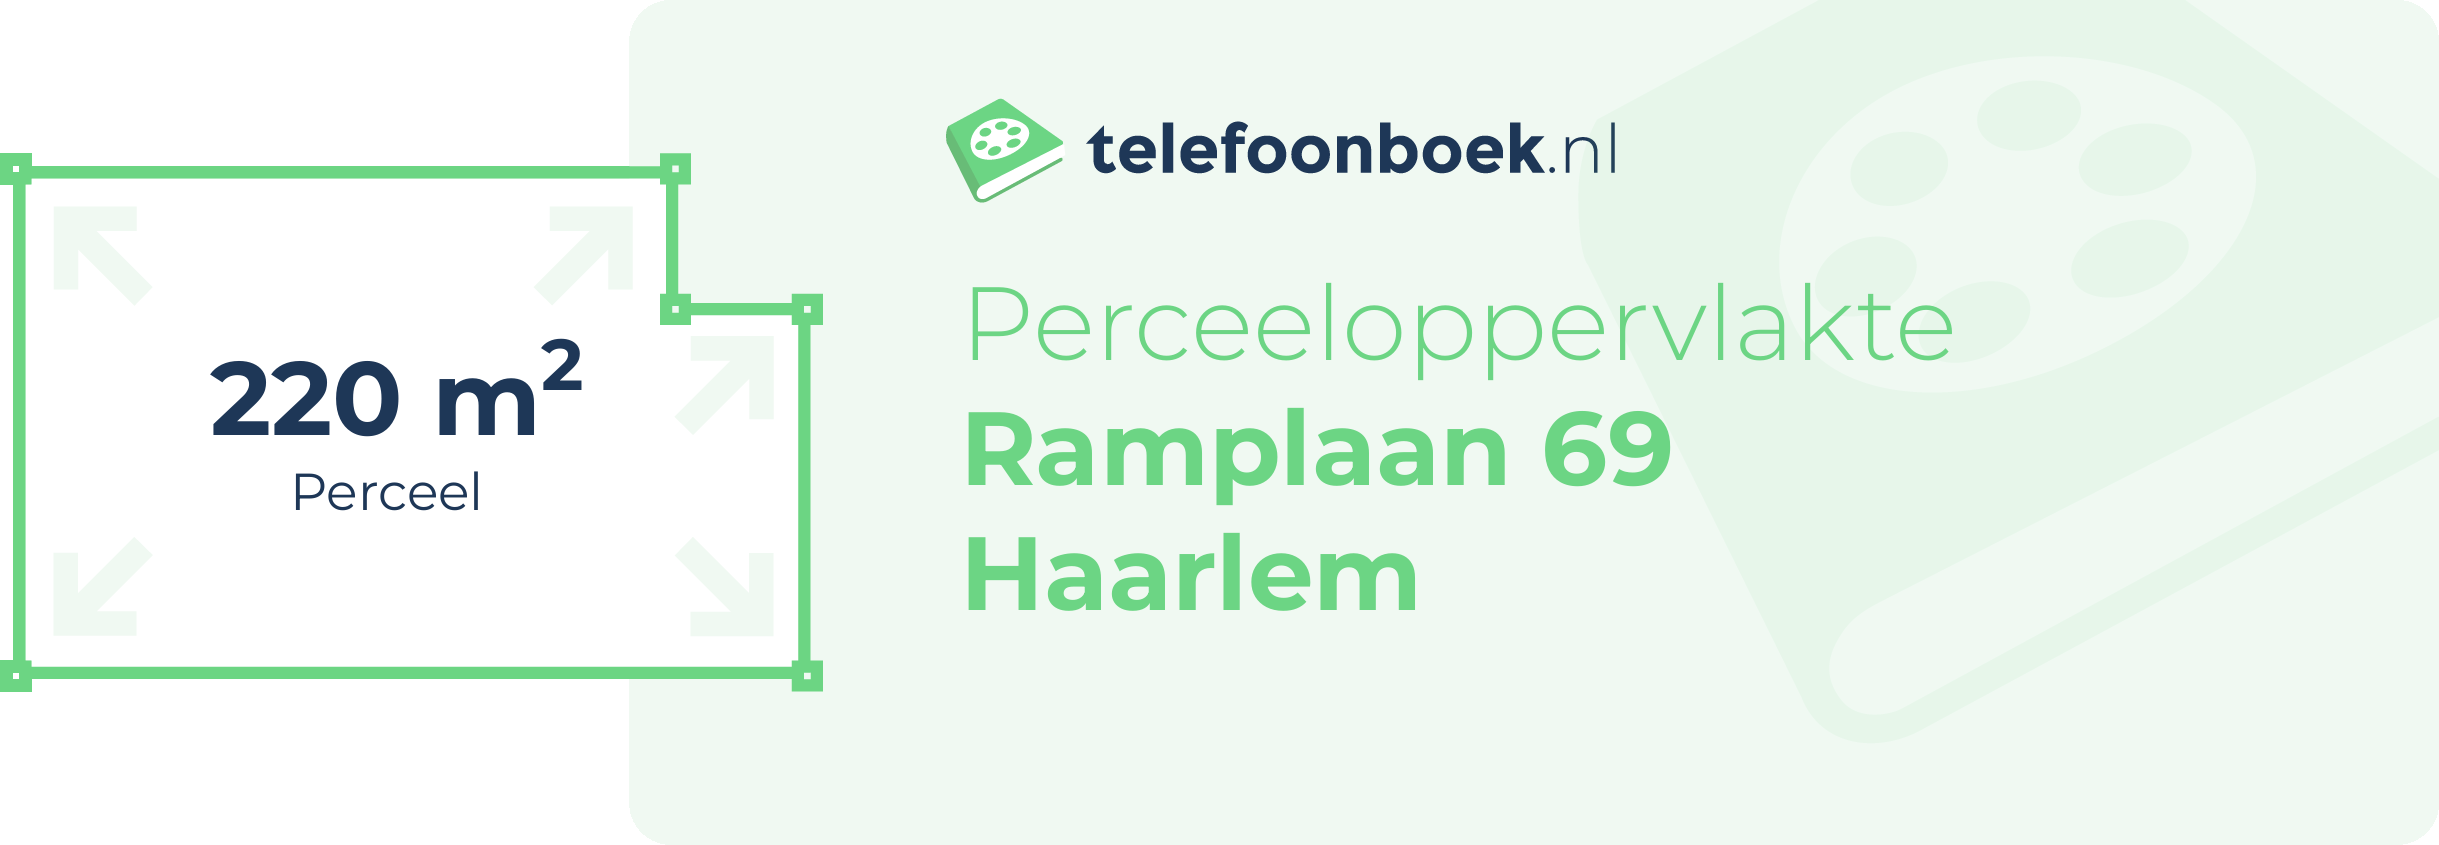 Perceeloppervlakte Ramplaan 69 Haarlem